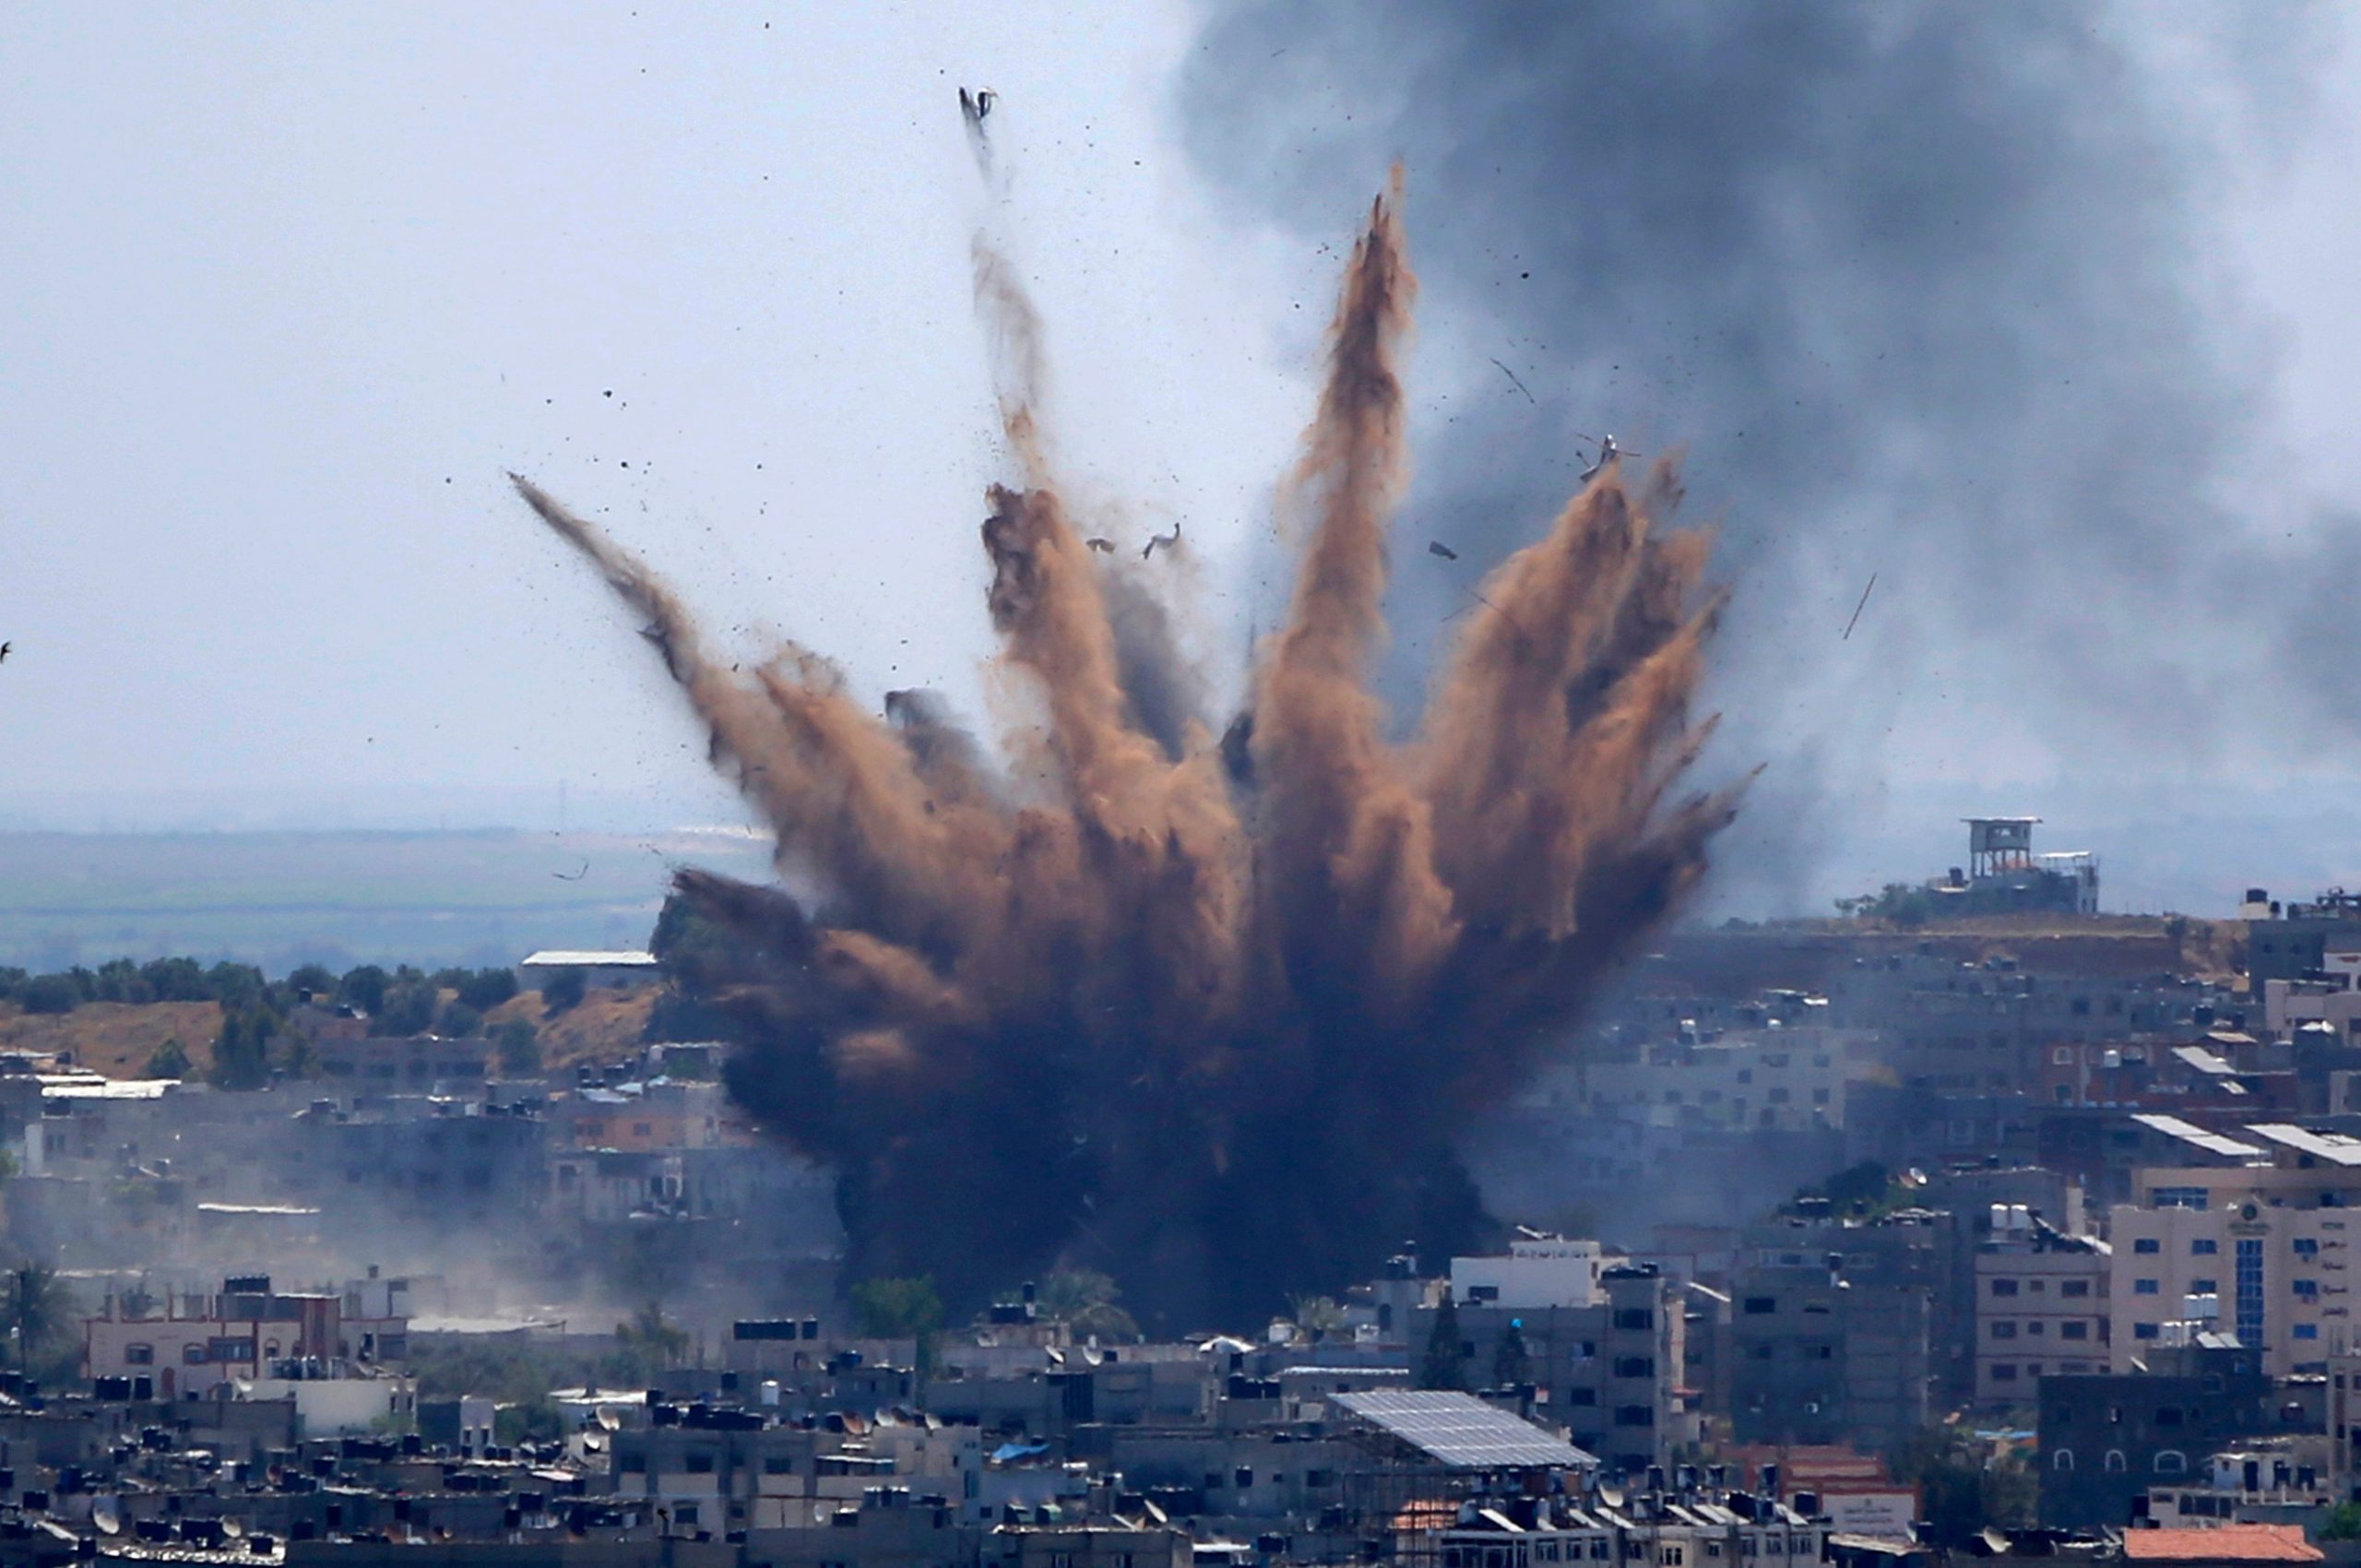 Gaza pummelled by fresh Israeli air strikes, nearly 200 dead in a week